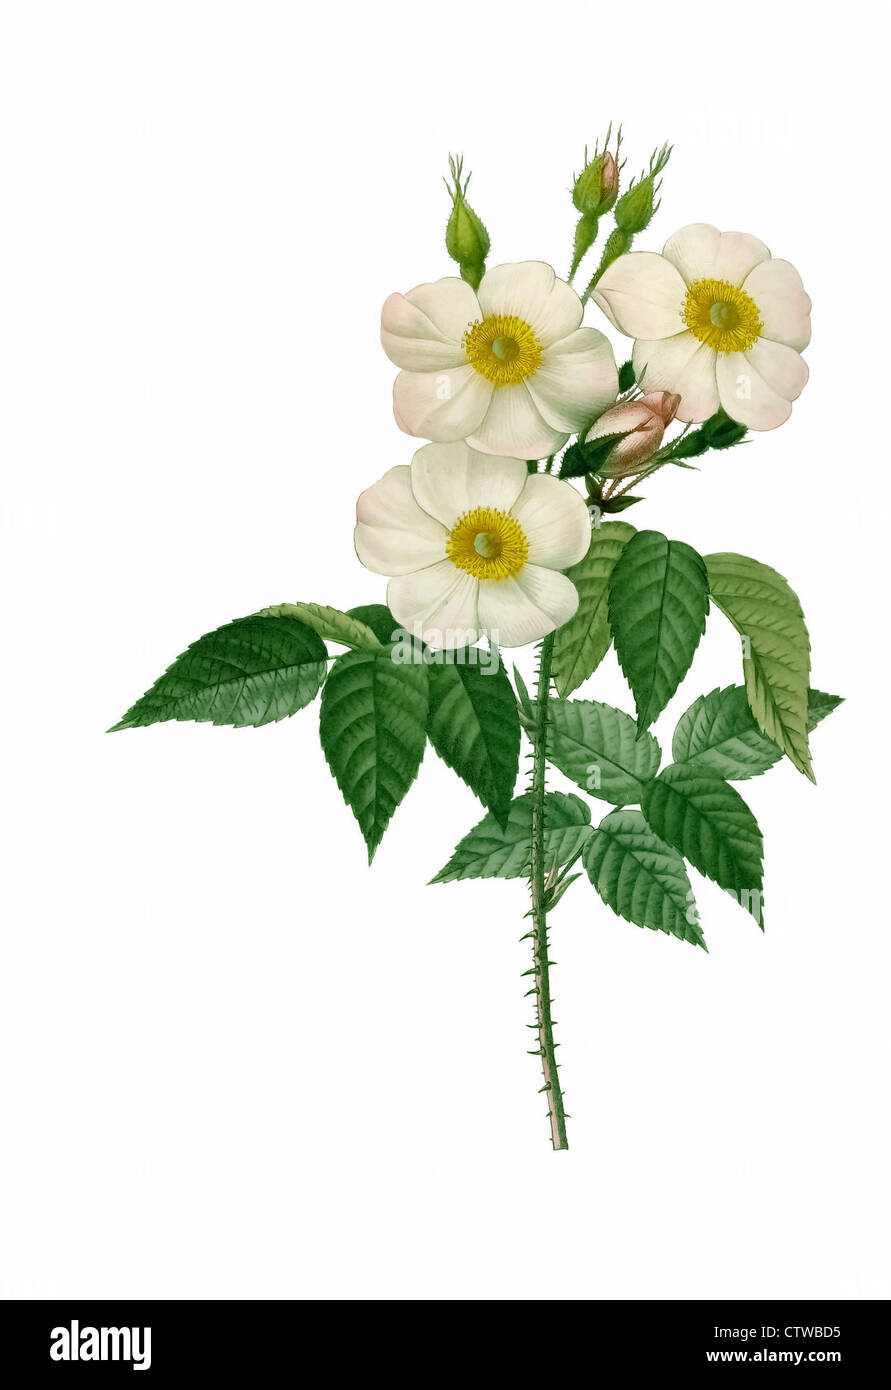 Illustration der Rosa Damascena Subalba weiße Variante der Damaszener Rose, die Rose von Damaskus, die Rose von Kastilien Stockfoto